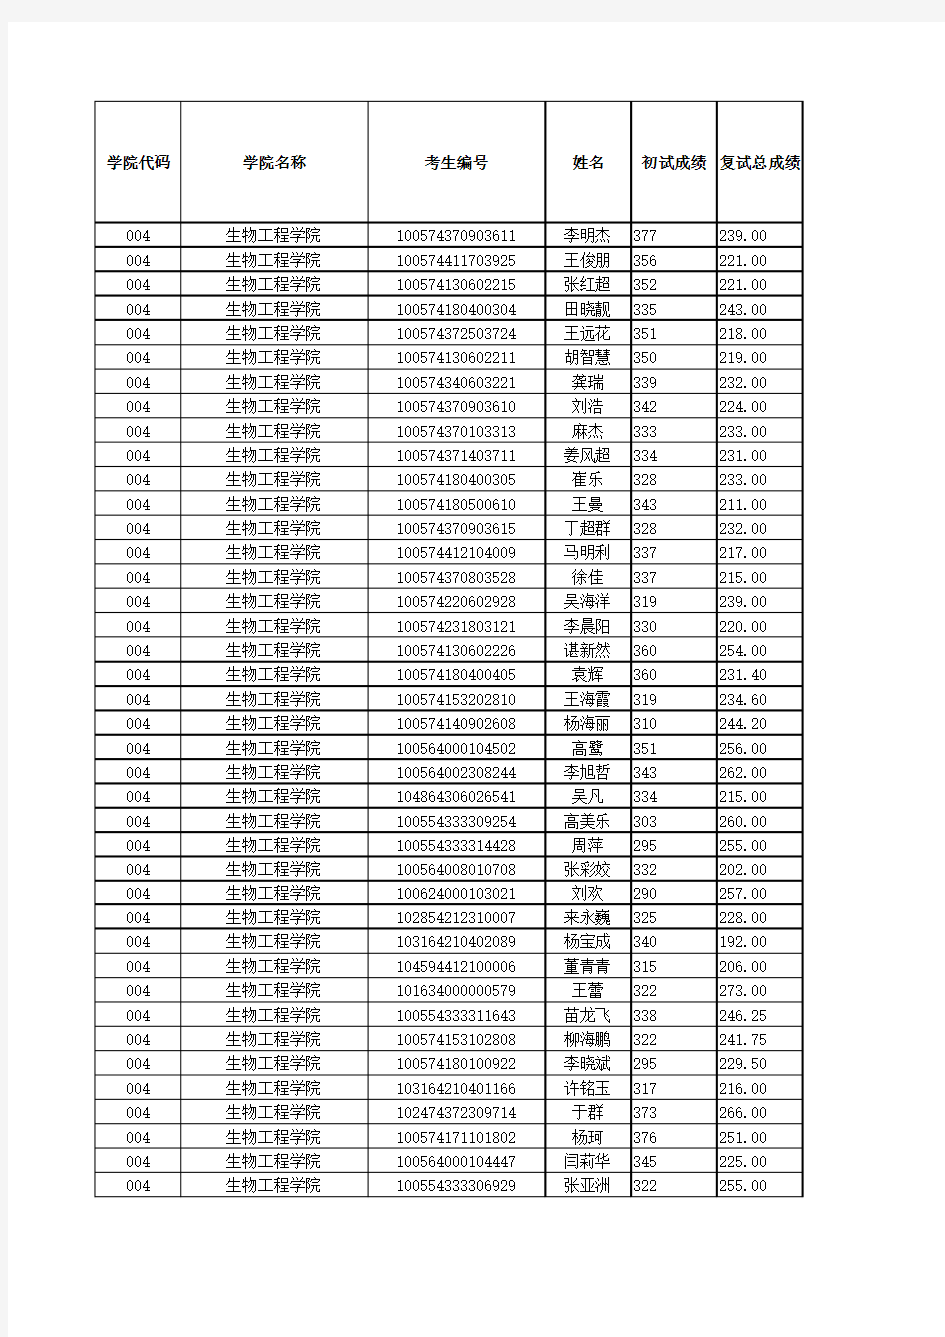 天津科技大学2015年考研成绩表(初试+复试)